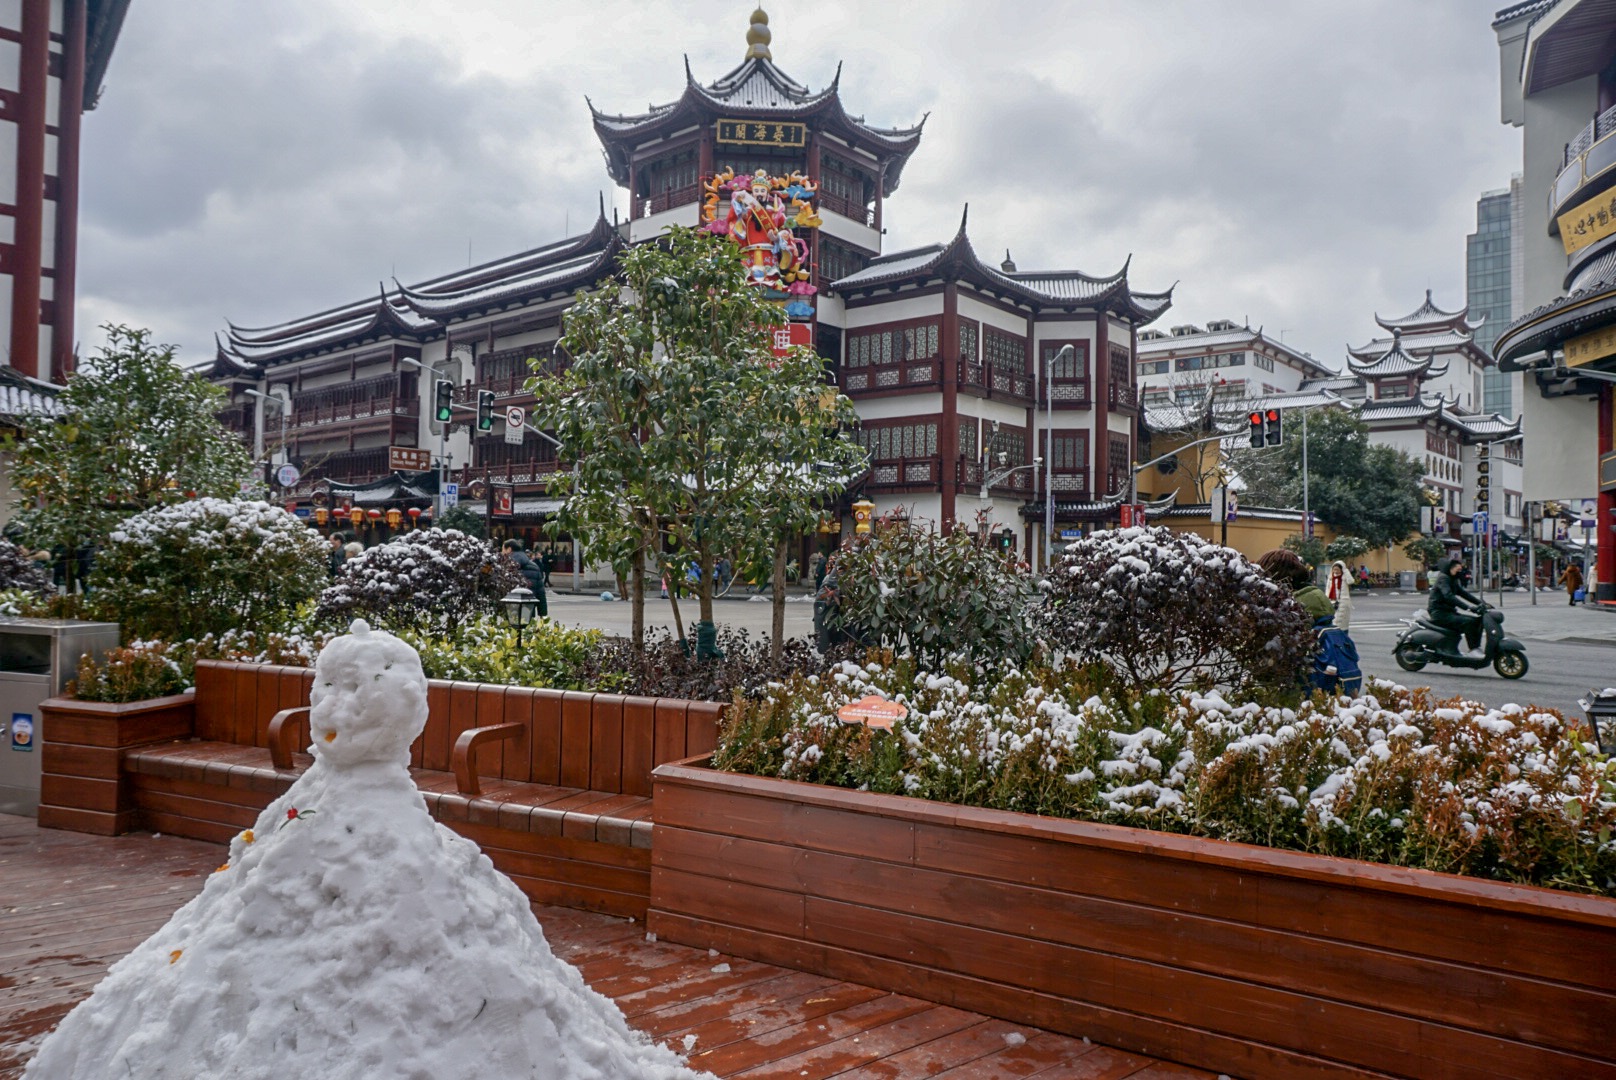 Visiter le centre ville de Shanghai en 2 jours en hiver